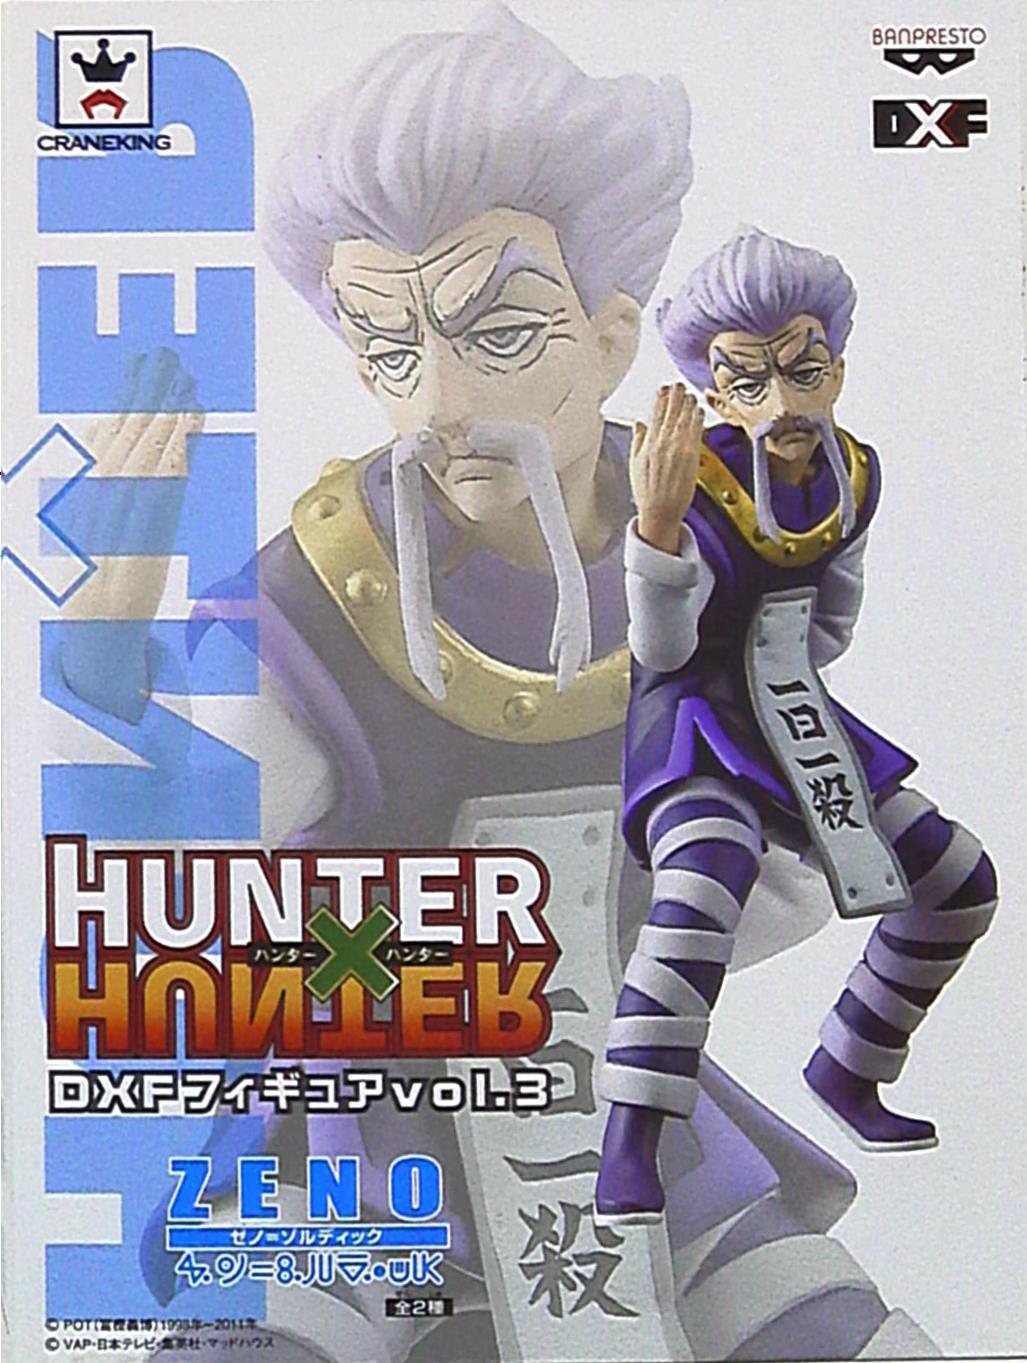 バンプレスト Dxfフィギュア3 Hunter Hunter ゼノ ゾルディック Vol 3 Zeno まんだらけ Mandarake